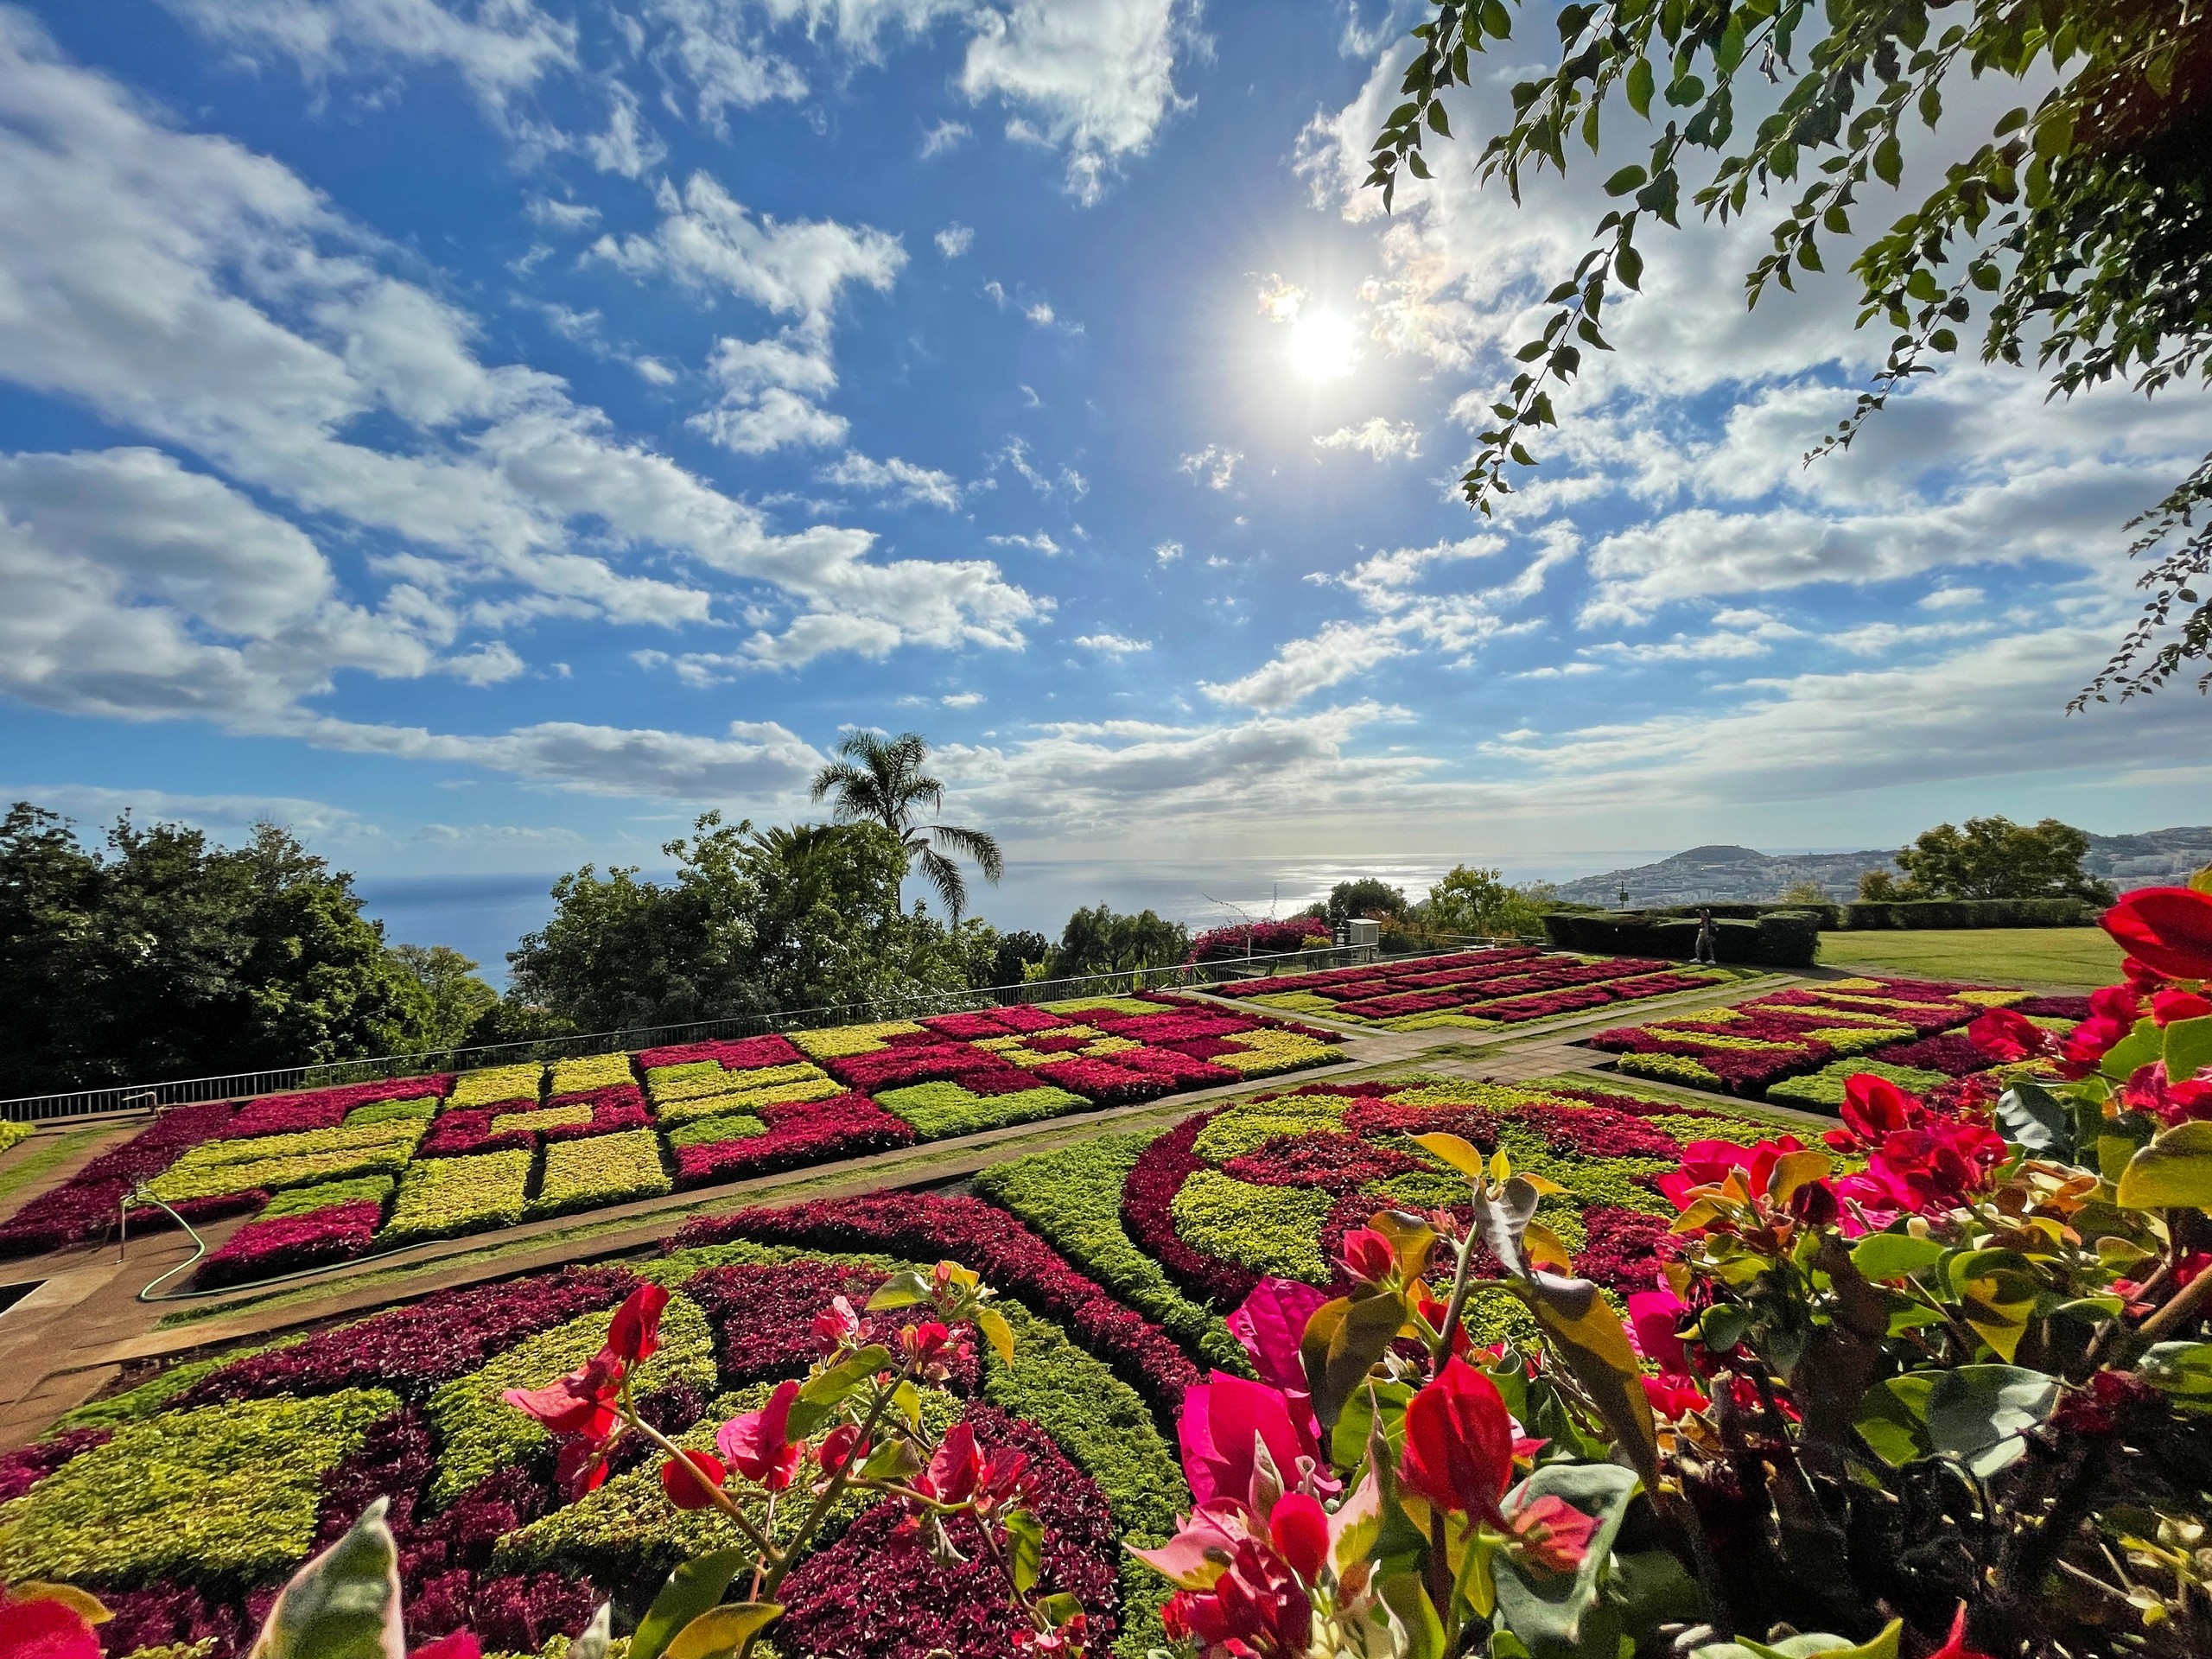 Beautiful gardens in Funchal, Madeira